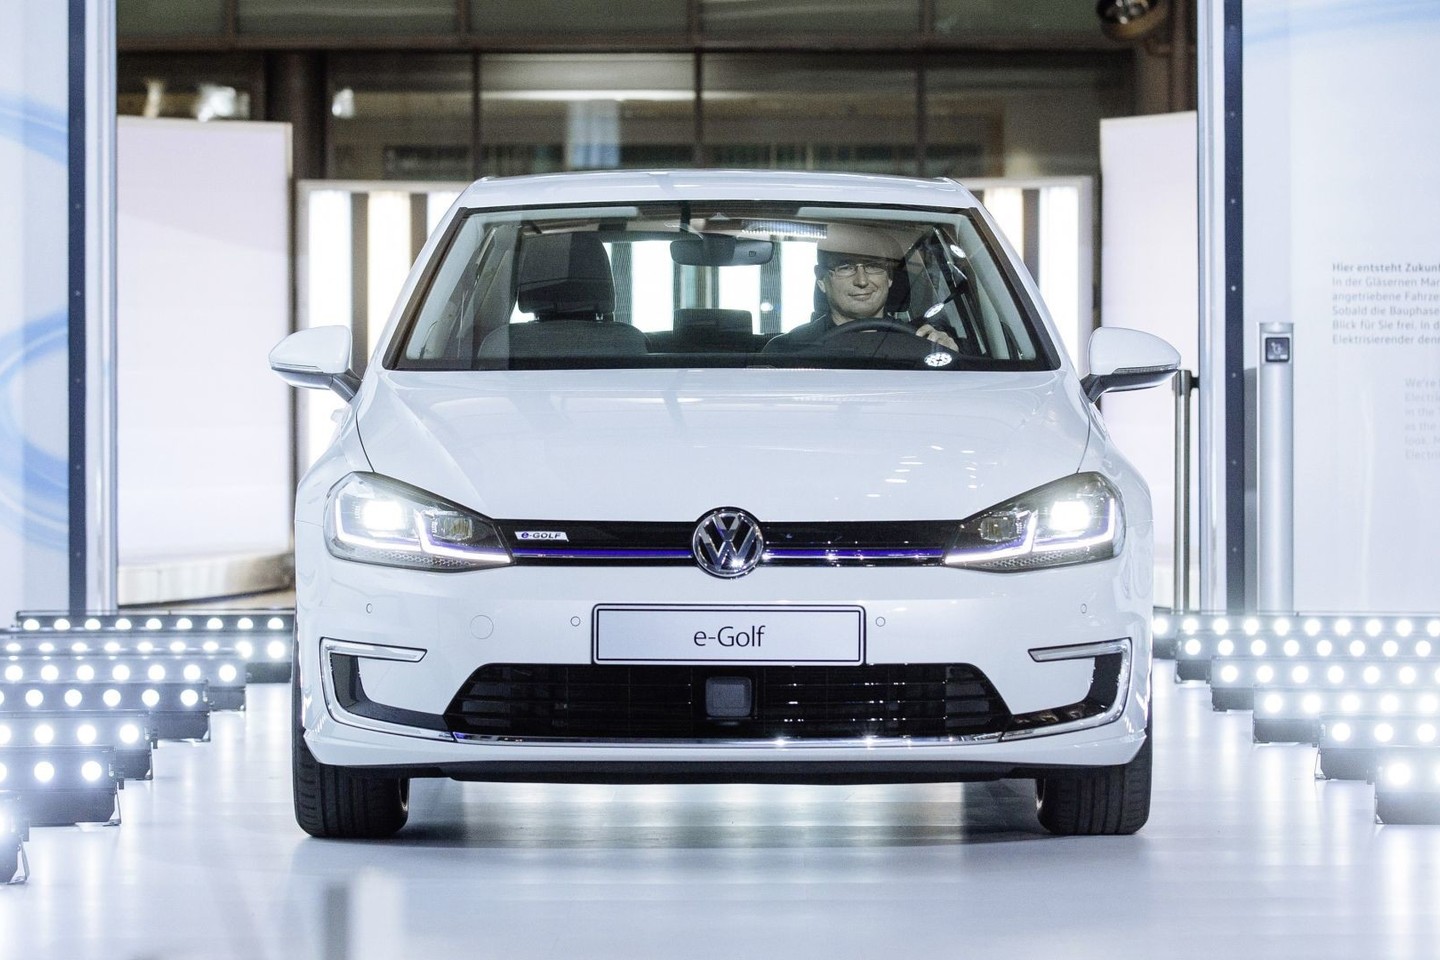 Atnaujintas elektra varomas „Volkswagen e-Golf“ vienu įkrovimu gali įveikti iki 300 kilometrų atstumą. <br>Gamintojo nuotr.